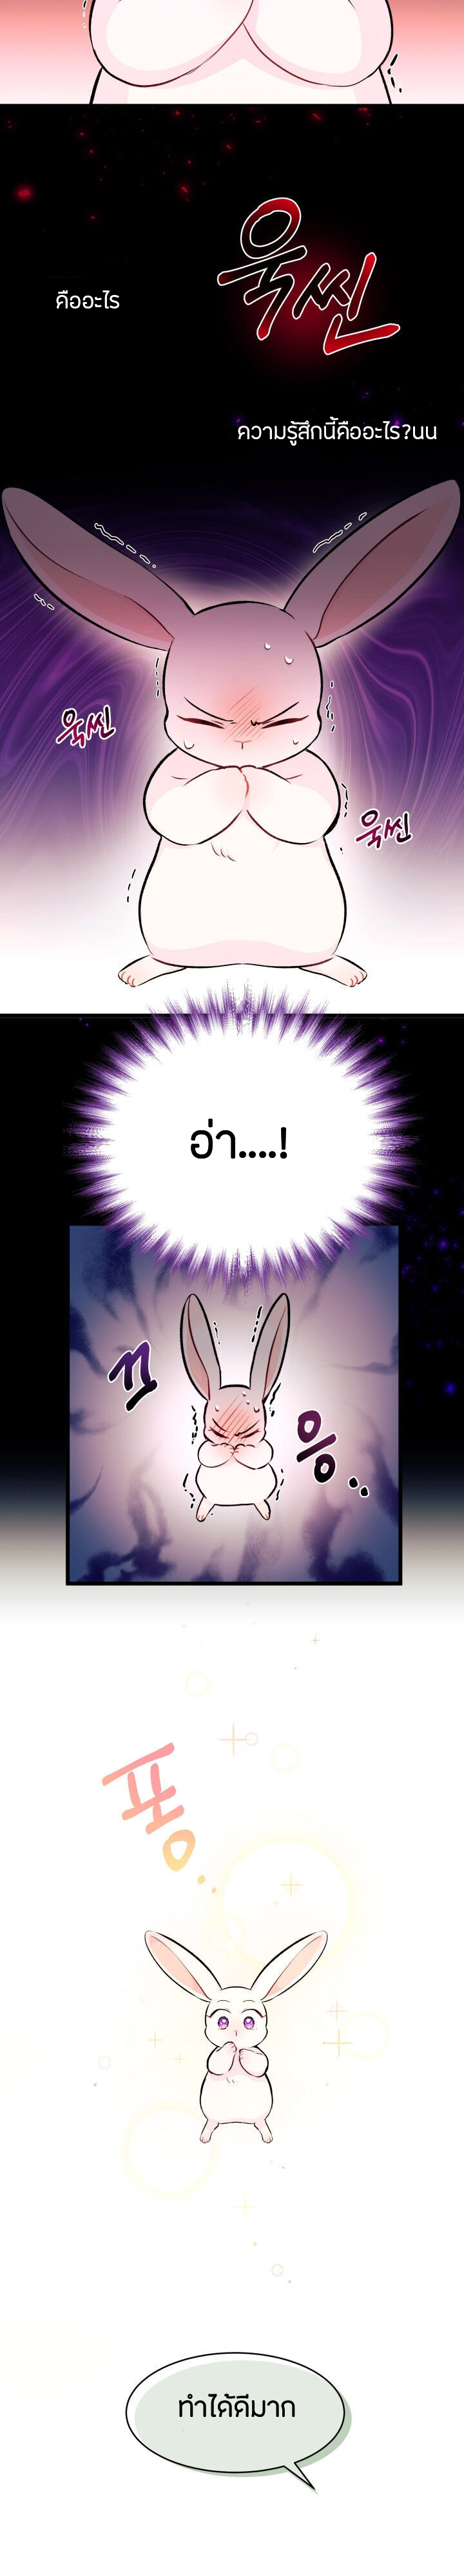 rabbit6 15